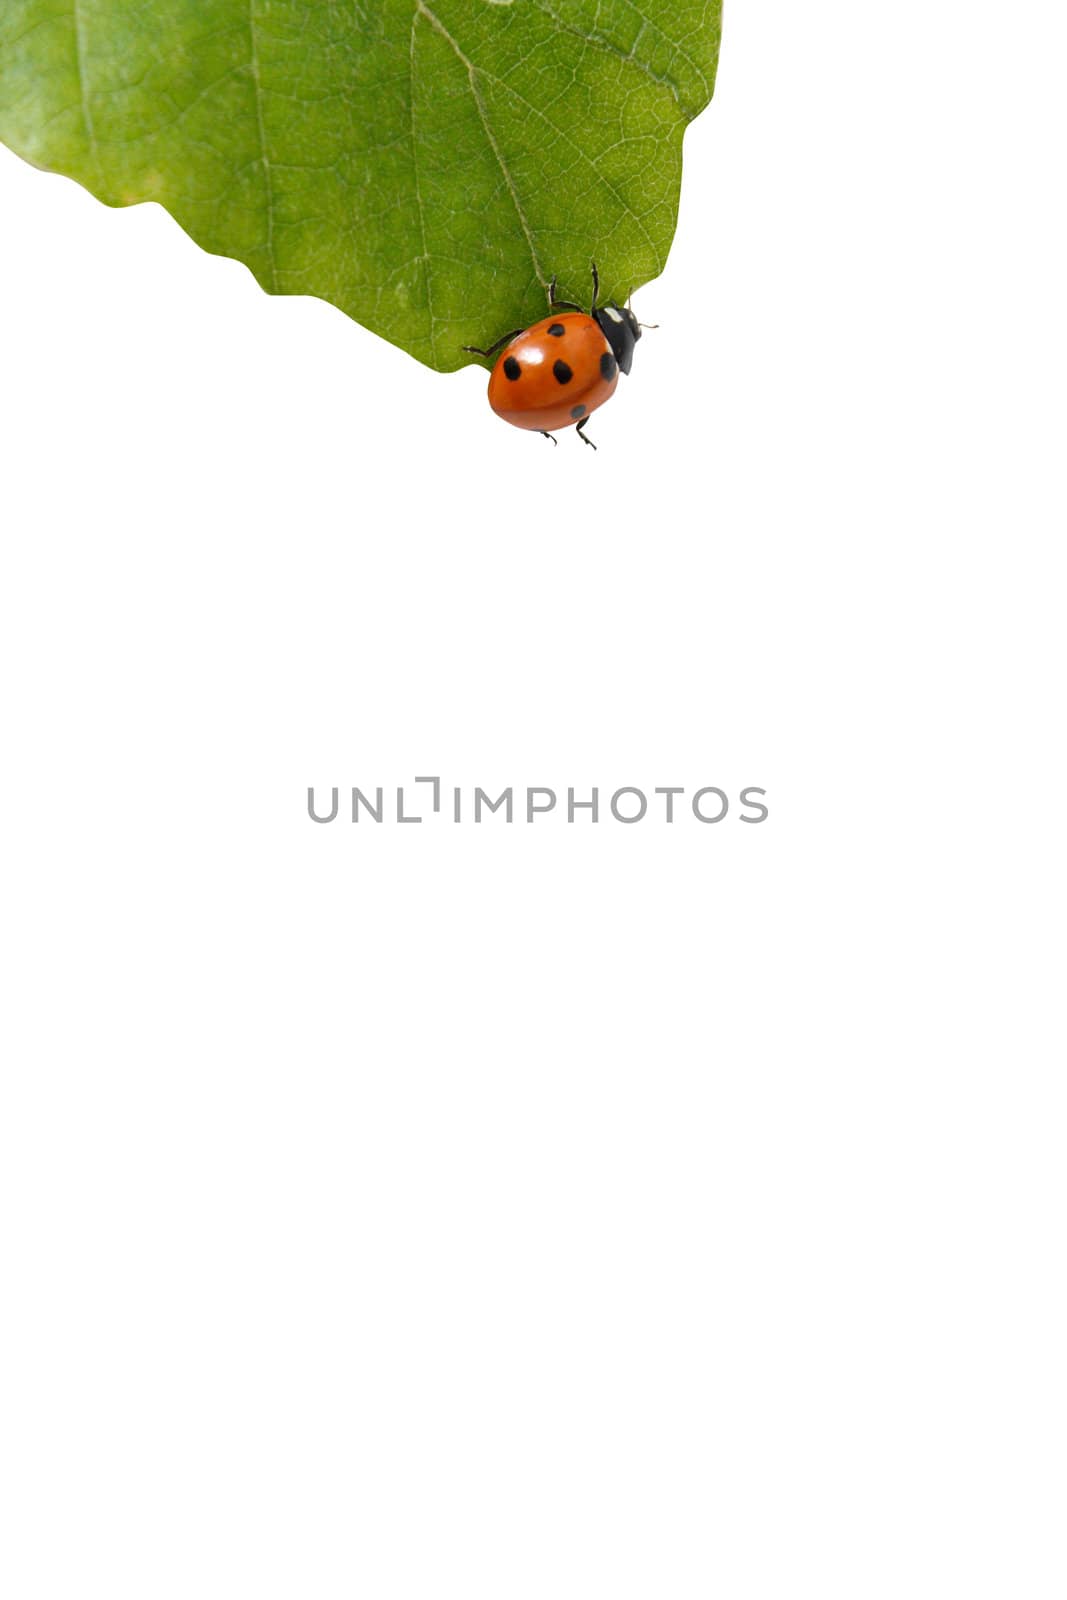 Lady bug on a leaf